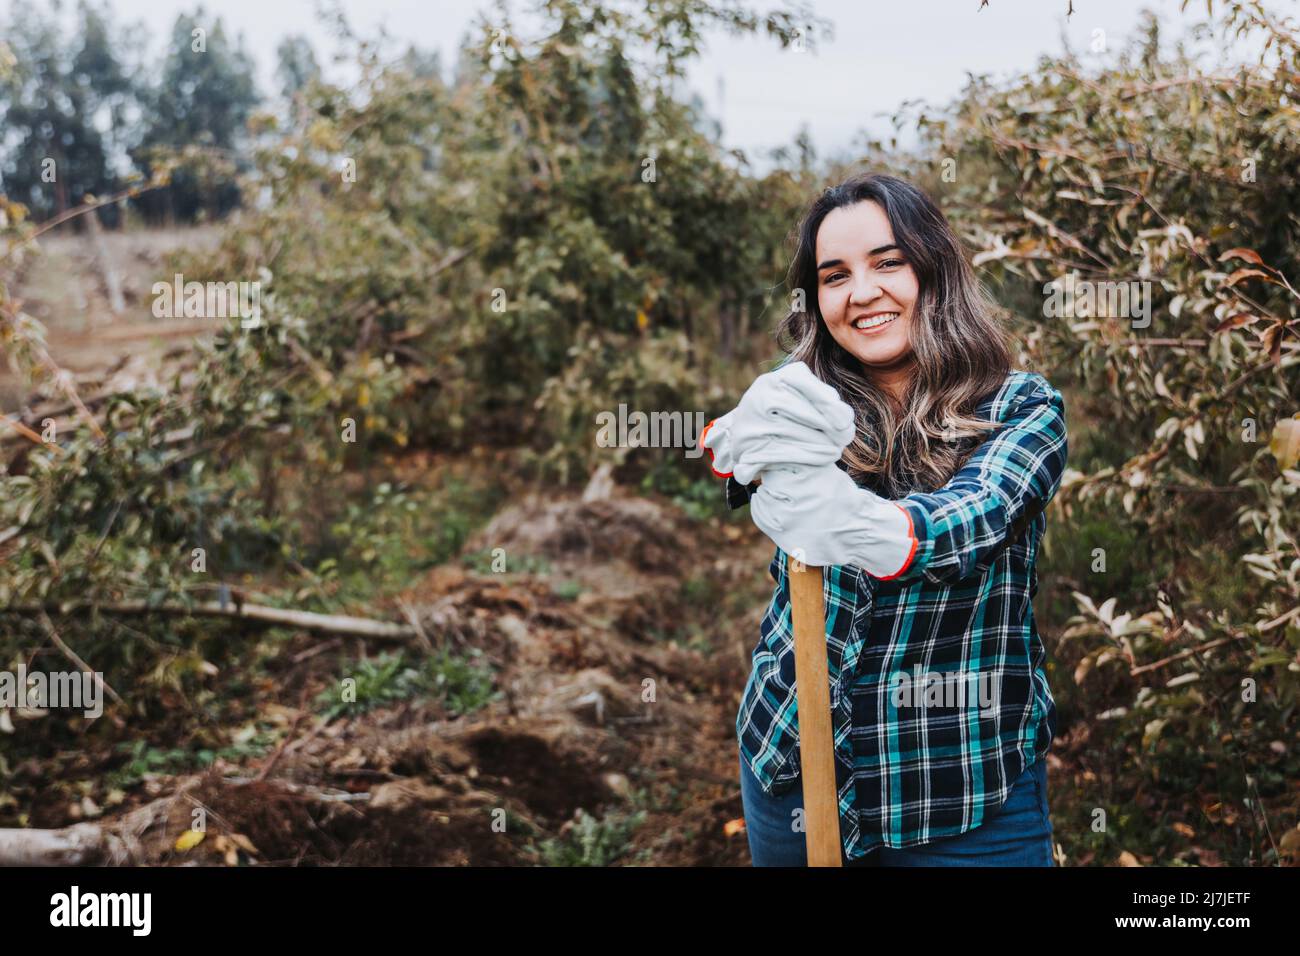 Jeune femme paysanne latine souriante utilisant des gants de jardinage et s'appuyant sur une pelle. Banque D'Images